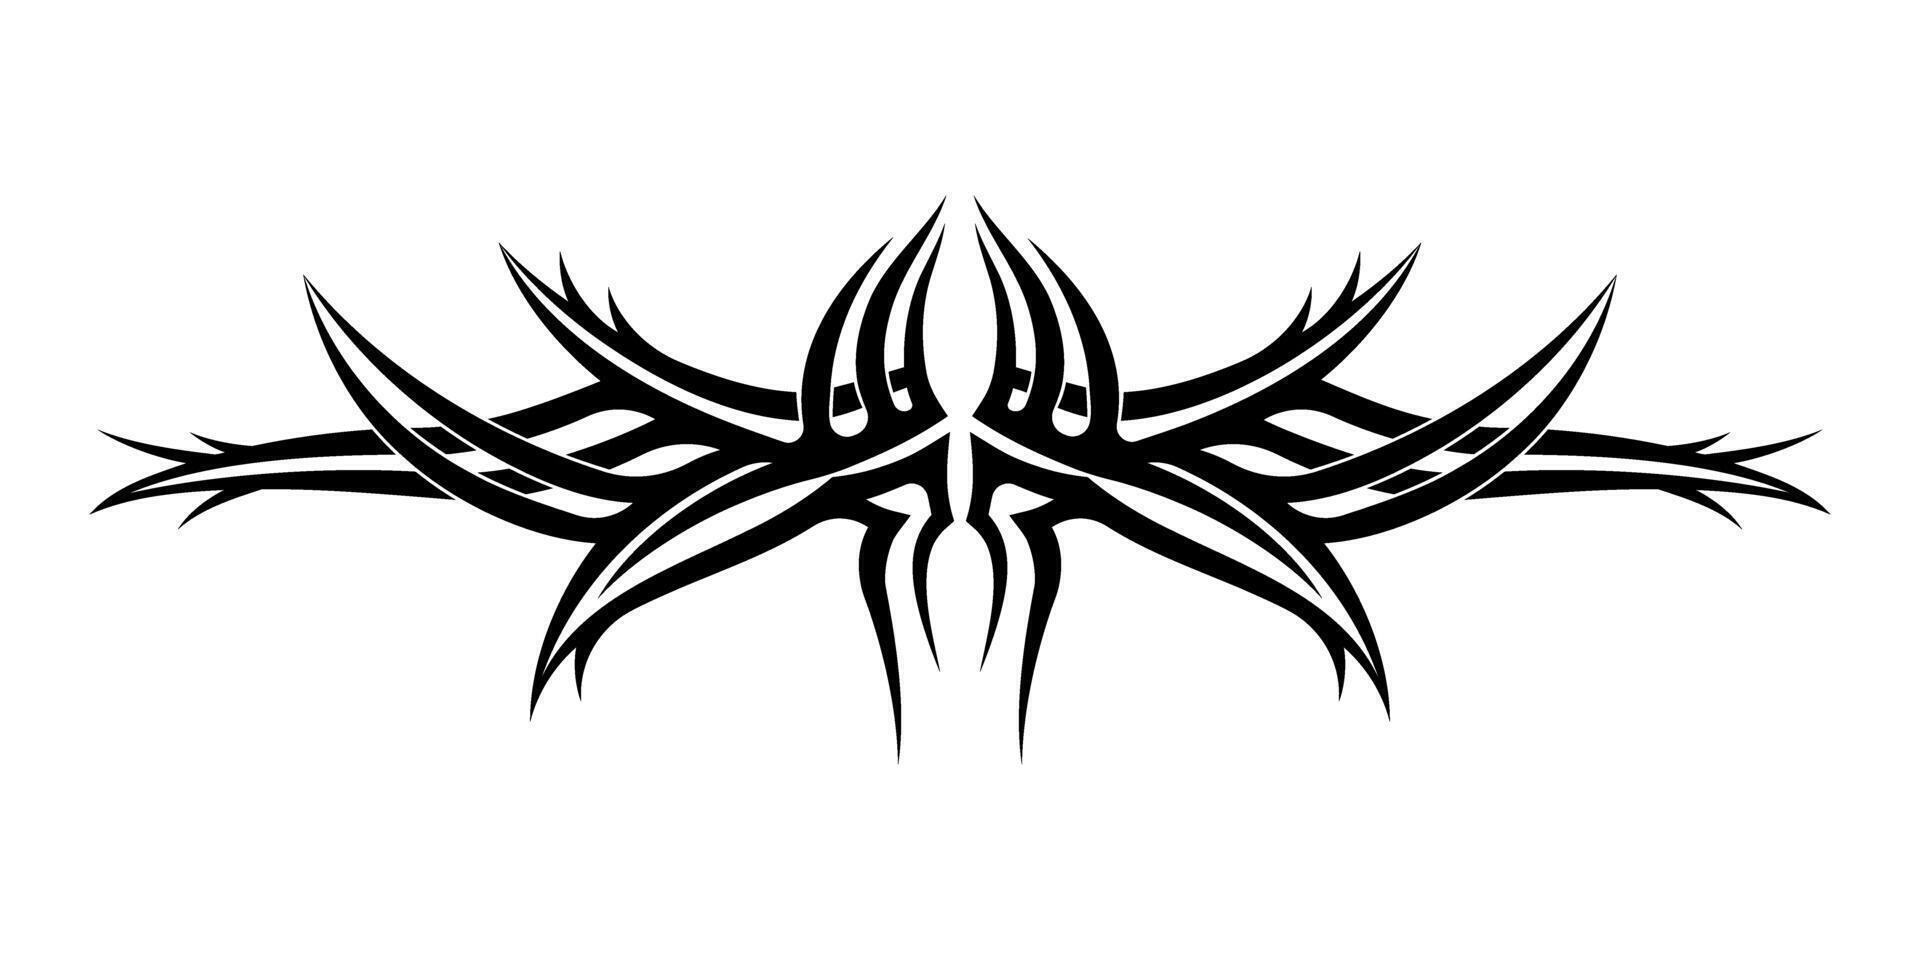 abstrakt stam- tatuering symbol. invecklad svart stam- tatuering design med symmetrisk mönster. vektor